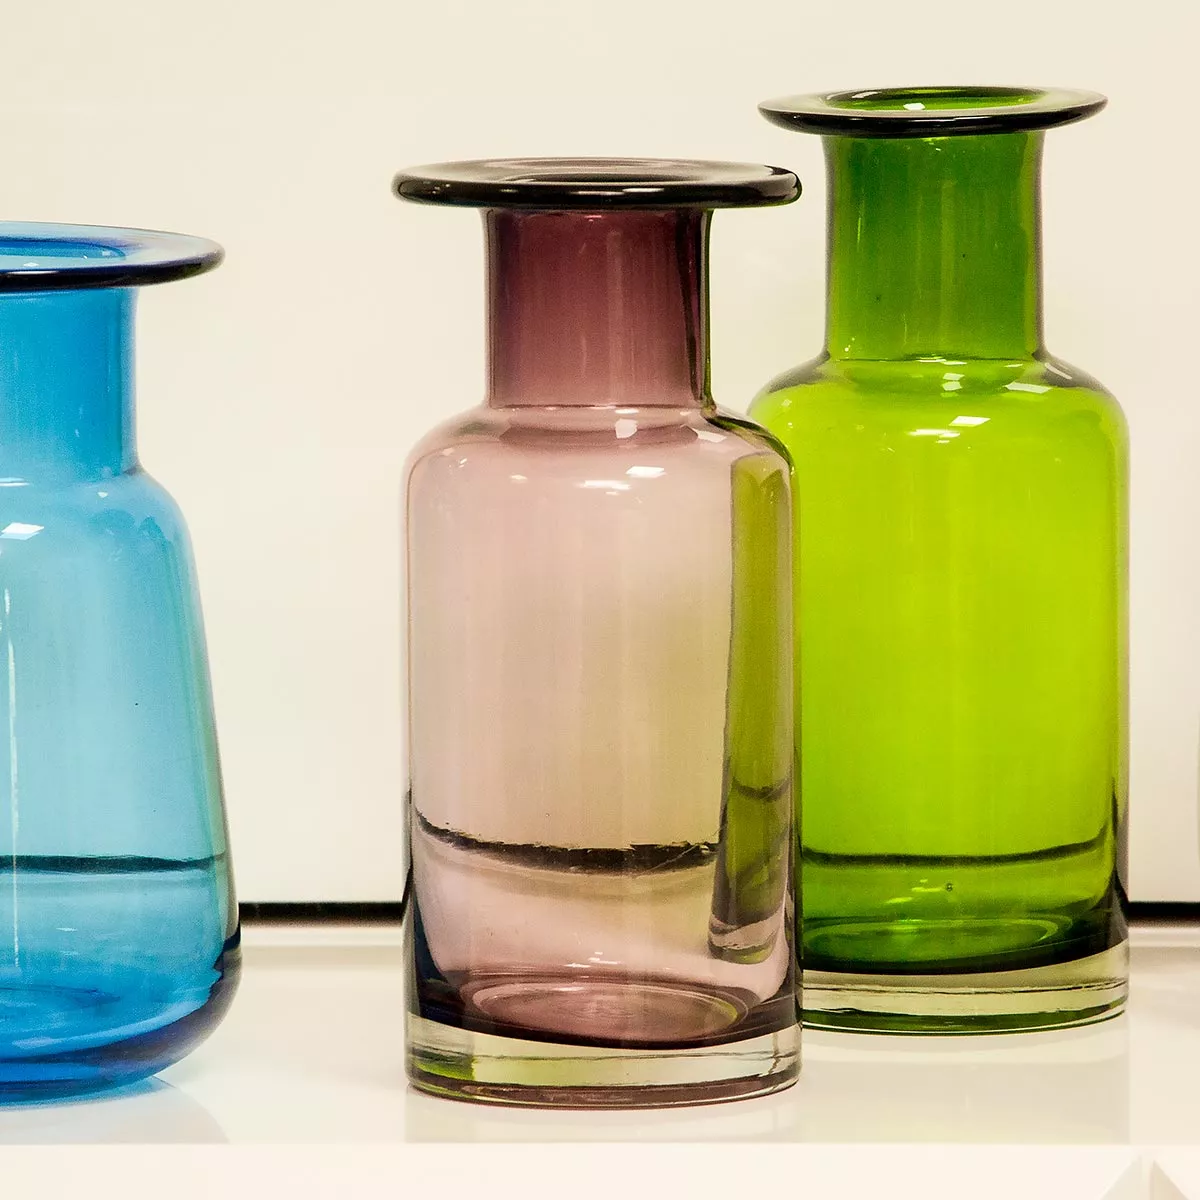 Primeira imagem para pesquisa de vasos decorativos sala